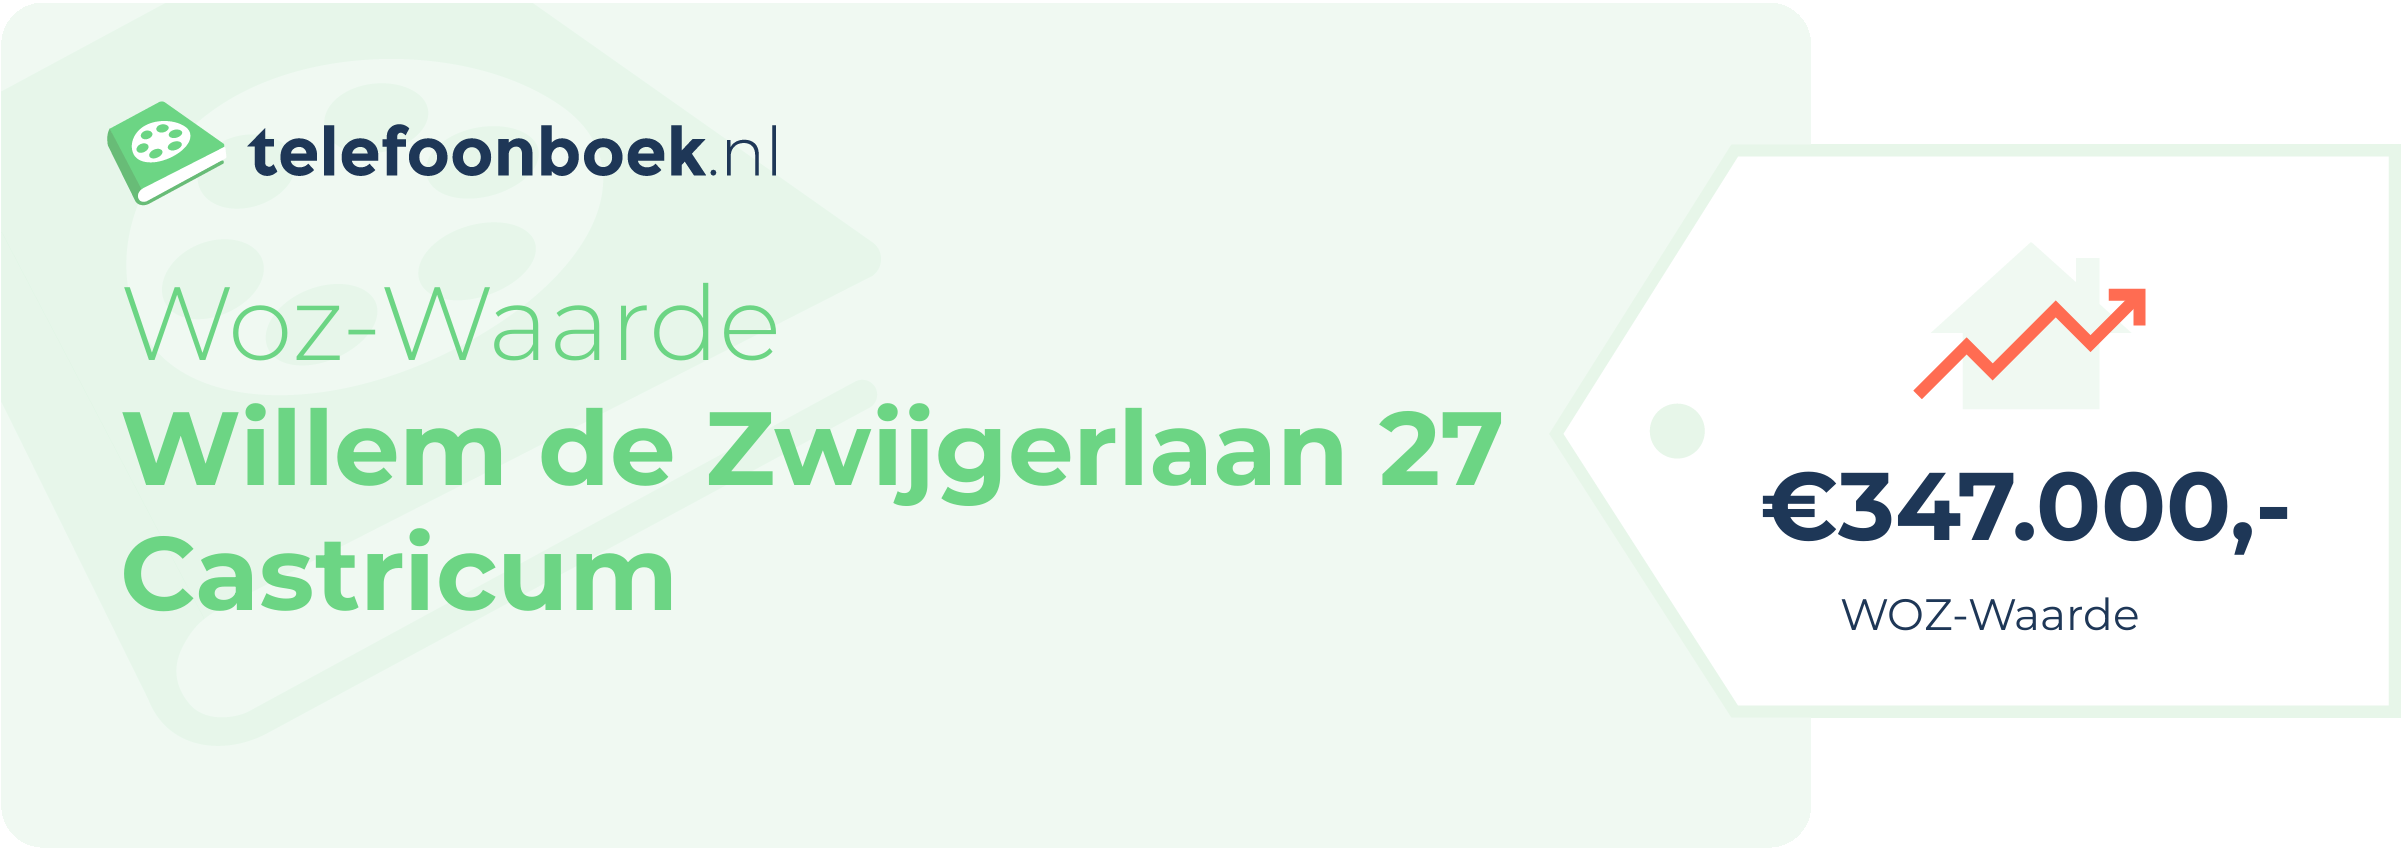 WOZ-waarde Willem De Zwijgerlaan 27 Castricum